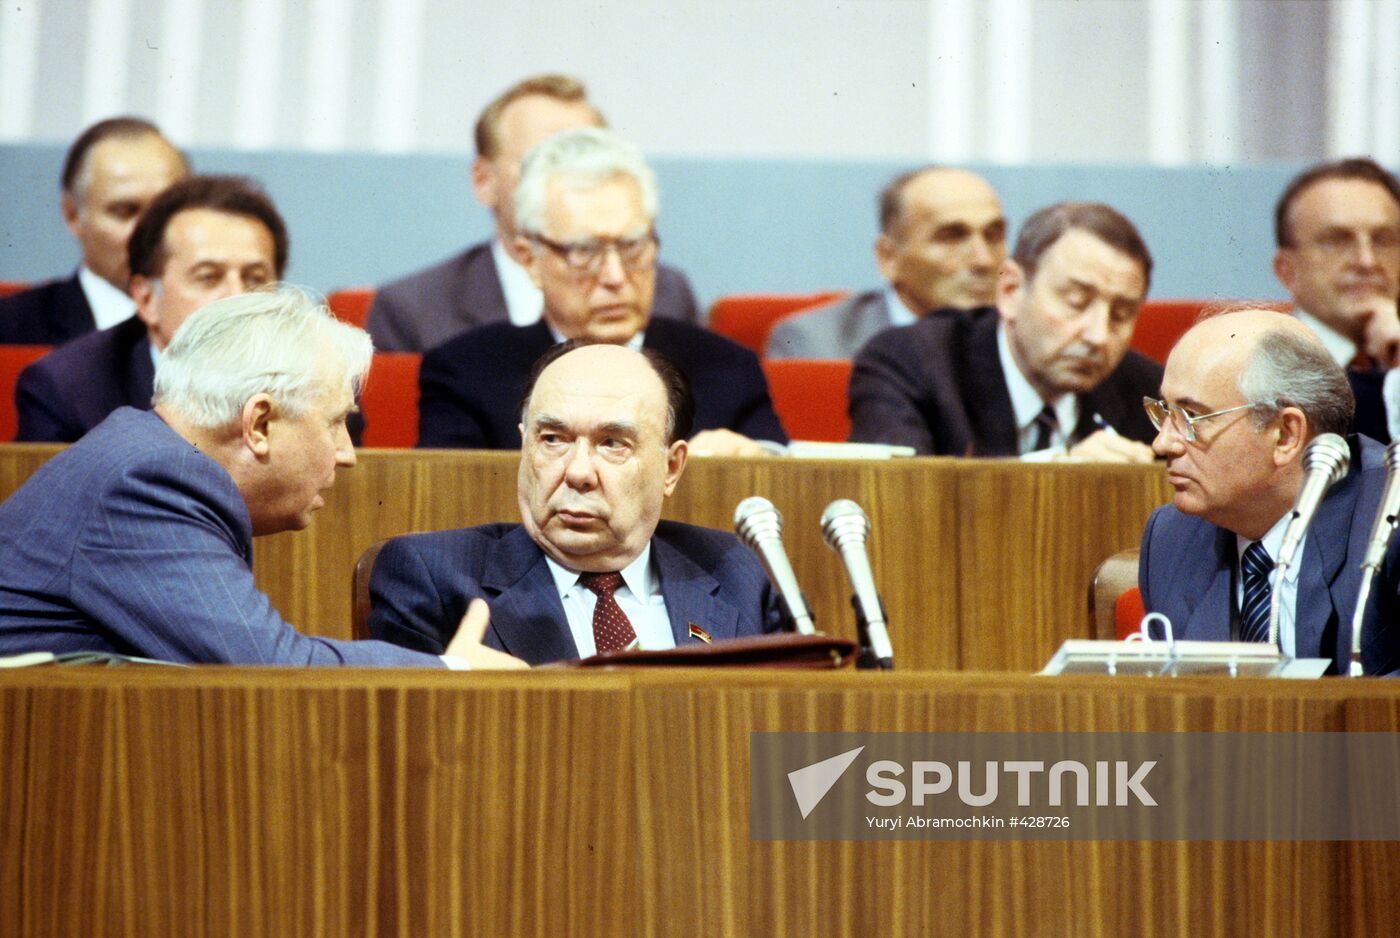 Yegor Ligachyov, Alexander Yakovlev, and Mikhail Gorbachev